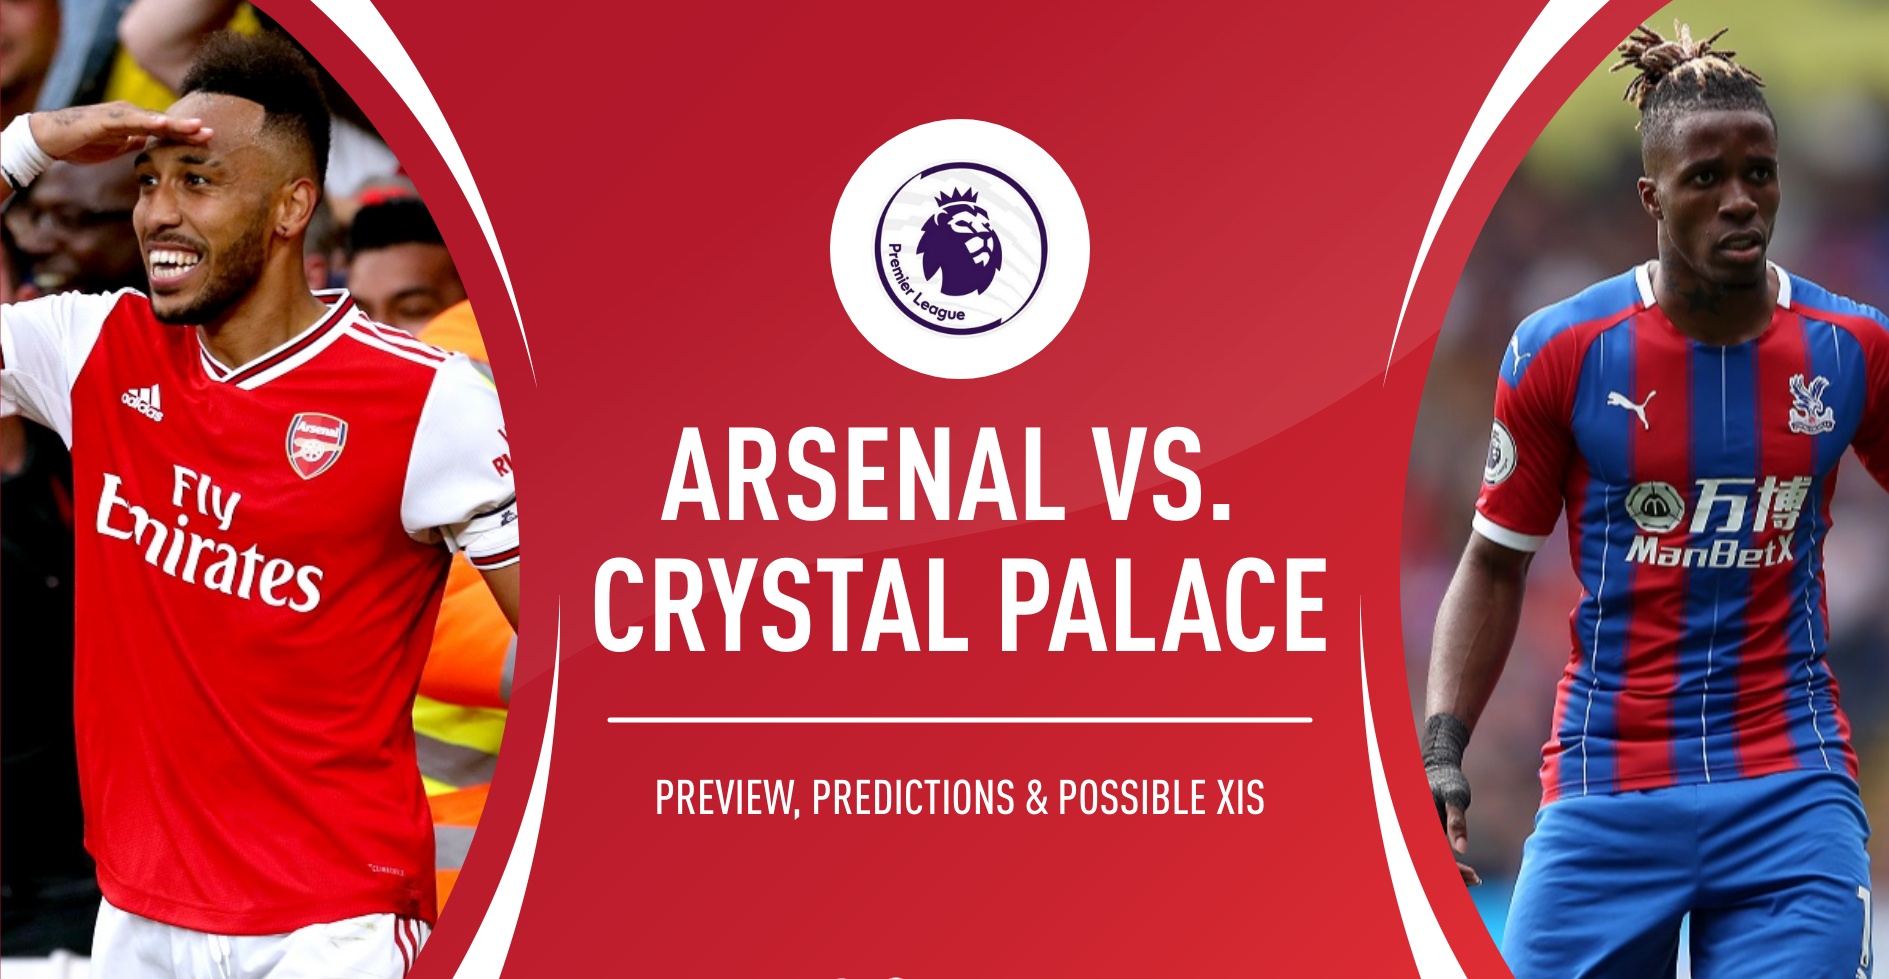 Arsenal vs Crystal palace